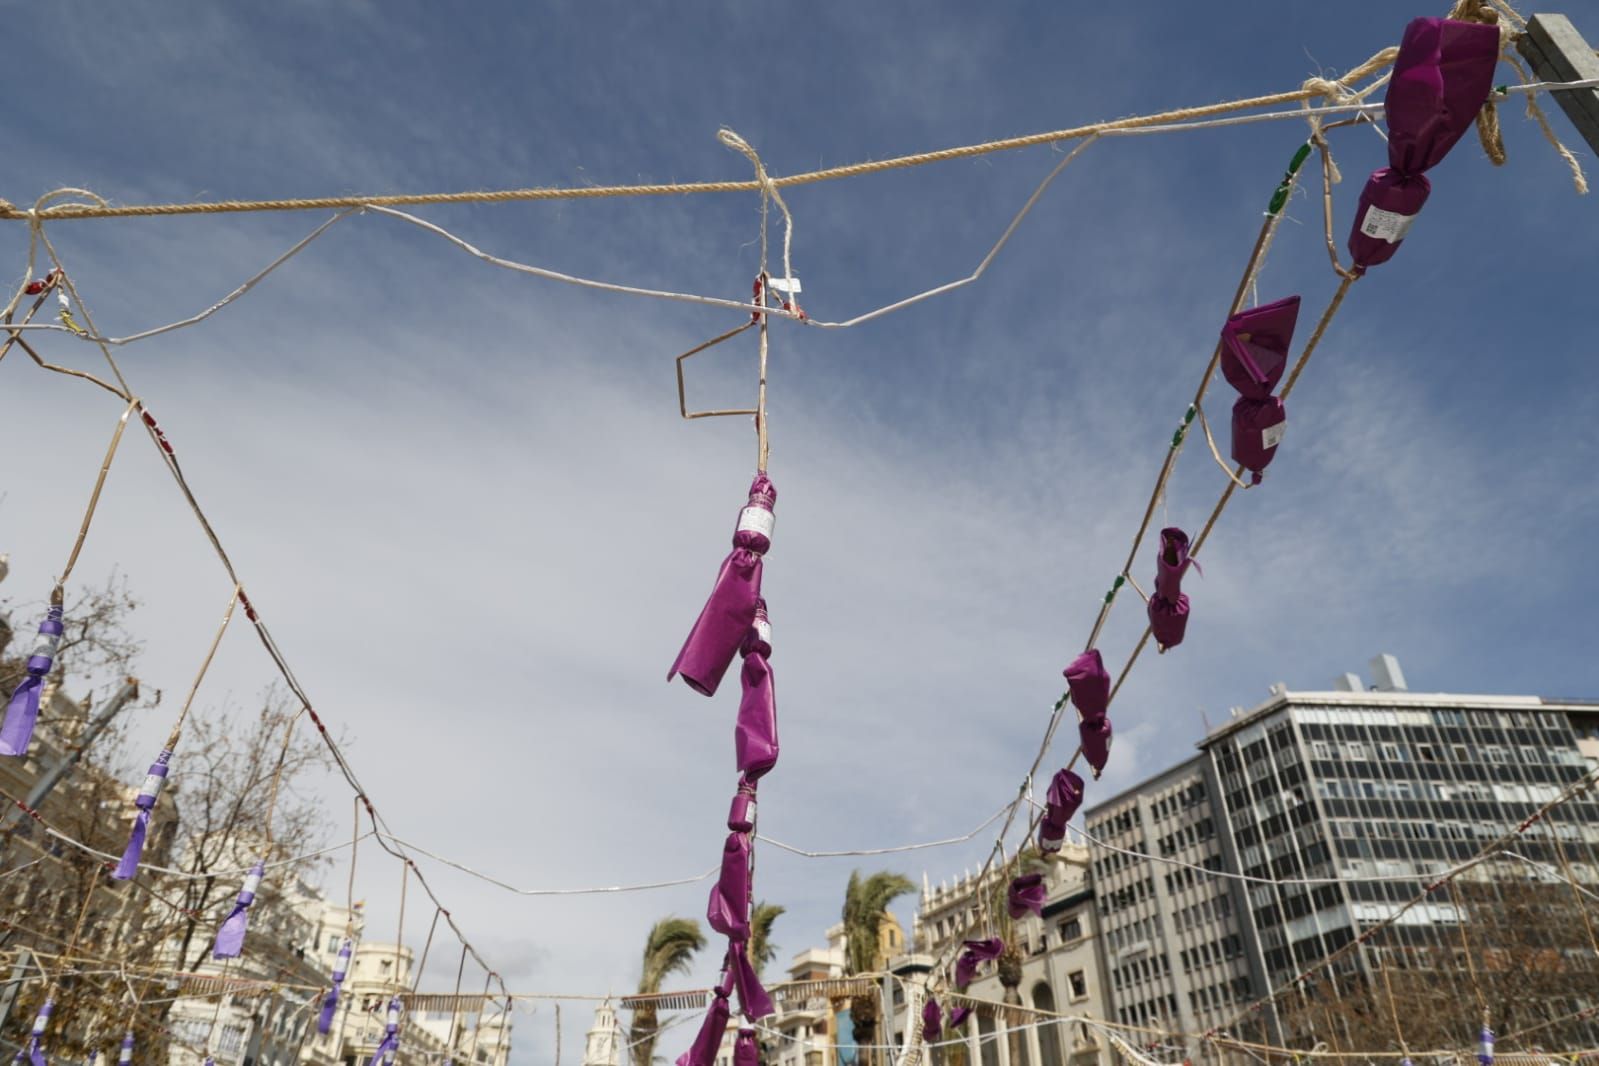 Ruido y color violeta en la mascletà de hoy para homenajear a las mujeres y a la lucha contra la violencia de género